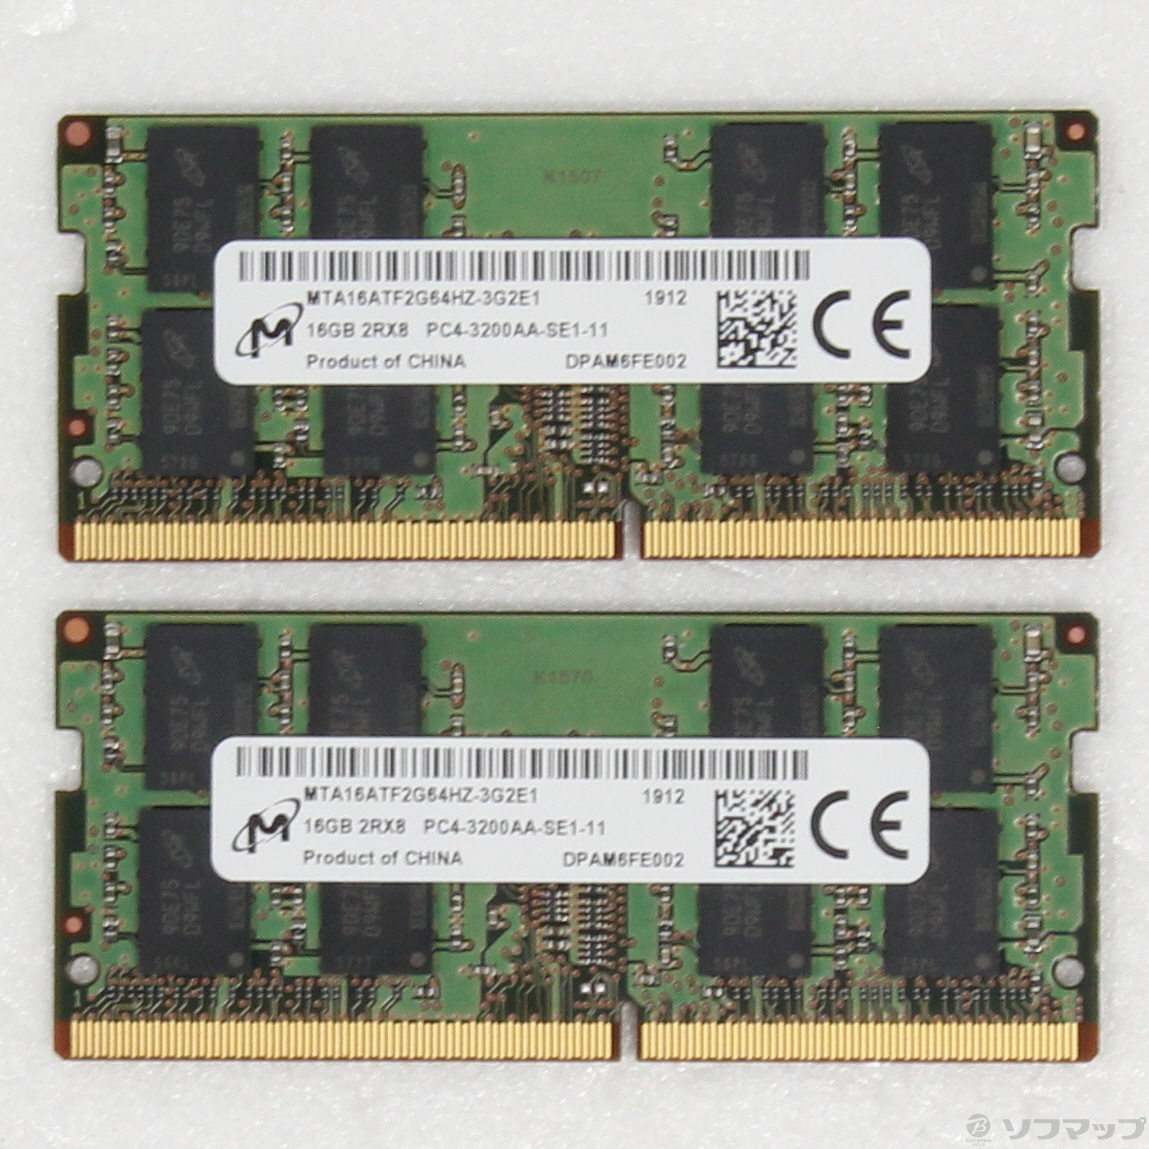 専用。SKhynix PC4-2400T 16GBメモリー2枚 (計32GB)